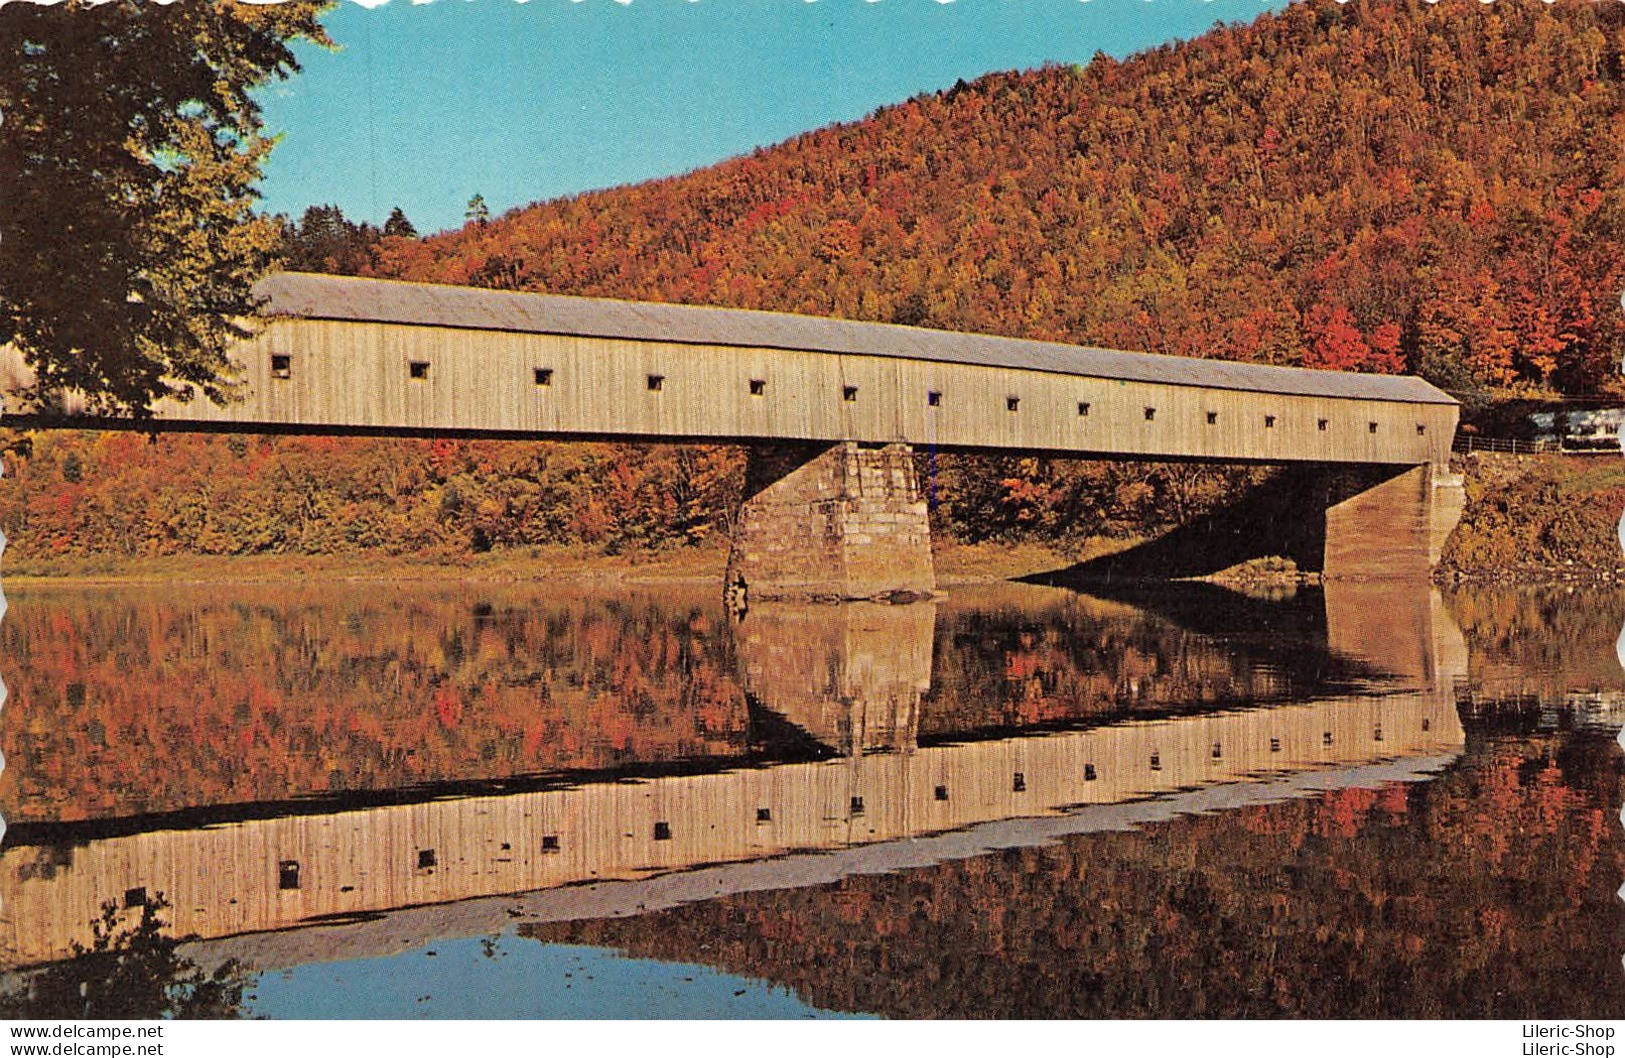 USA - Windsor - Vermont-Cornish - Lot de 18 cartes postales modernes toutes différentes